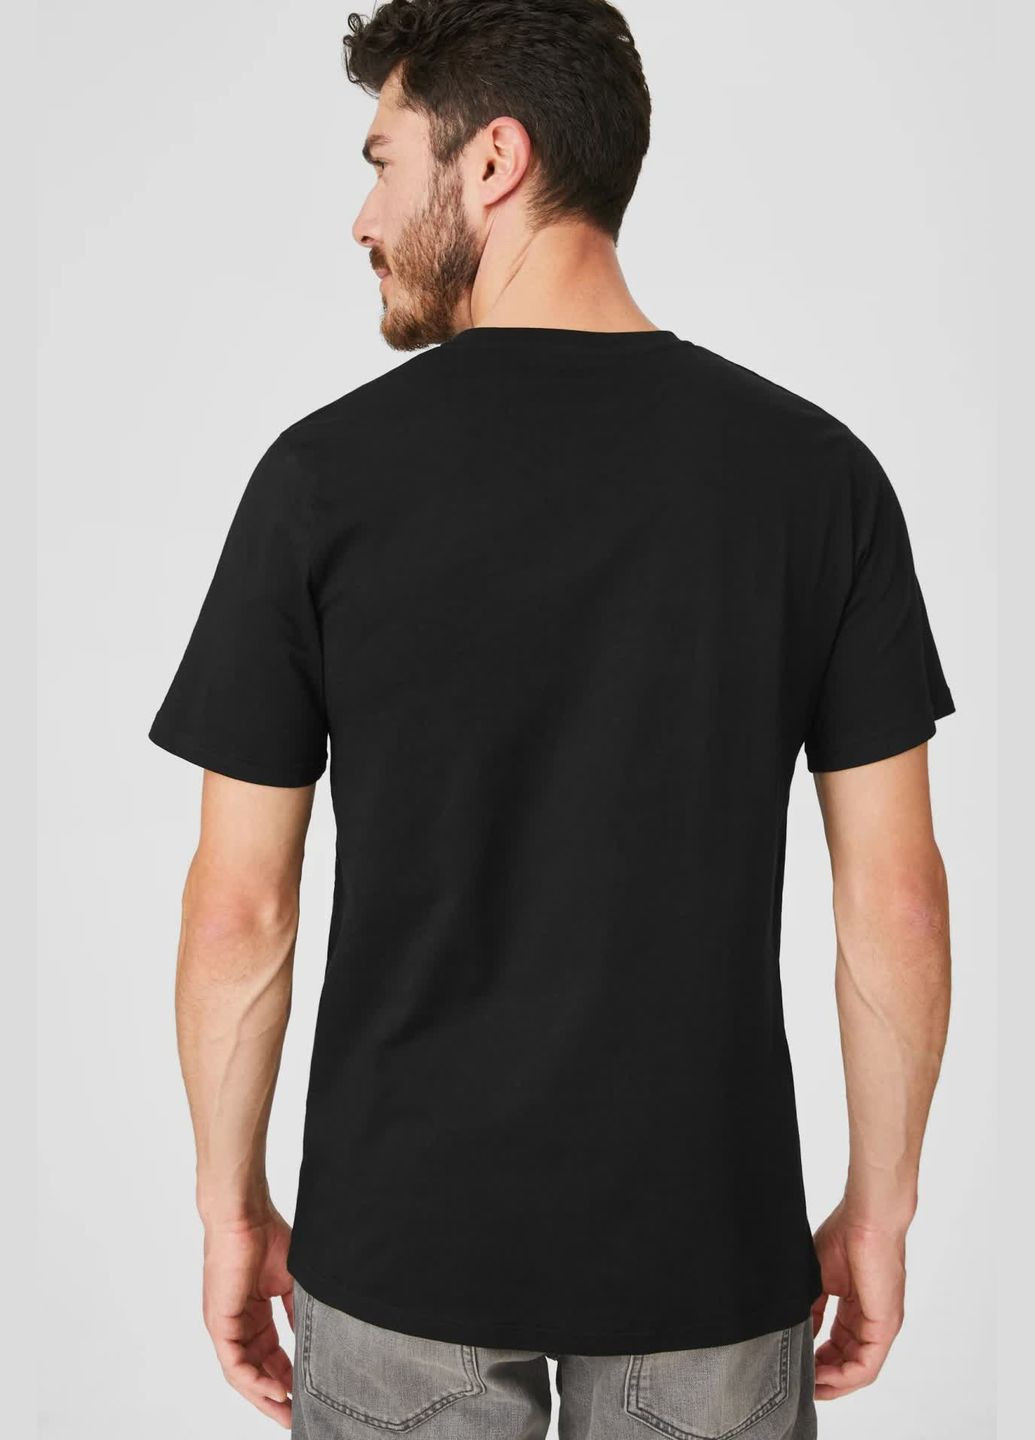 Черная комлект футболок из хлопка (2шт) C&A